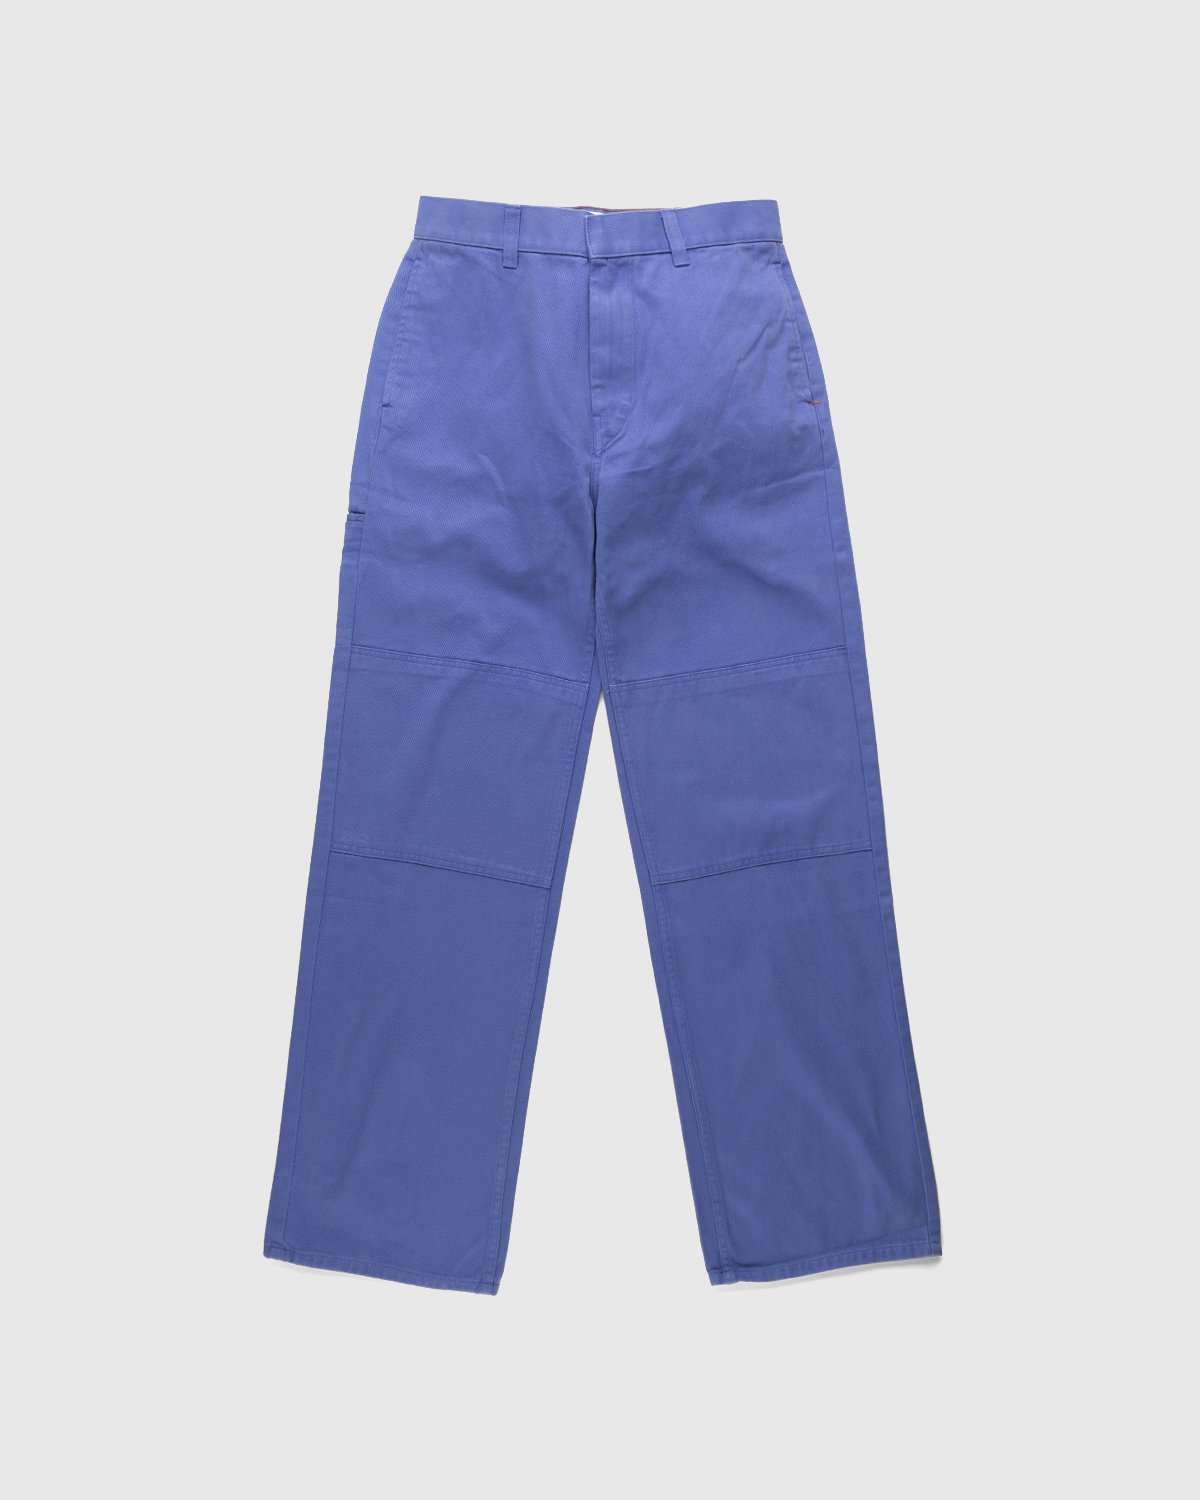 Heron Preston x Calvin Klein - Mens Straight Leg Utility Pant Amparo Blue - Clothing - Blue - Image 1